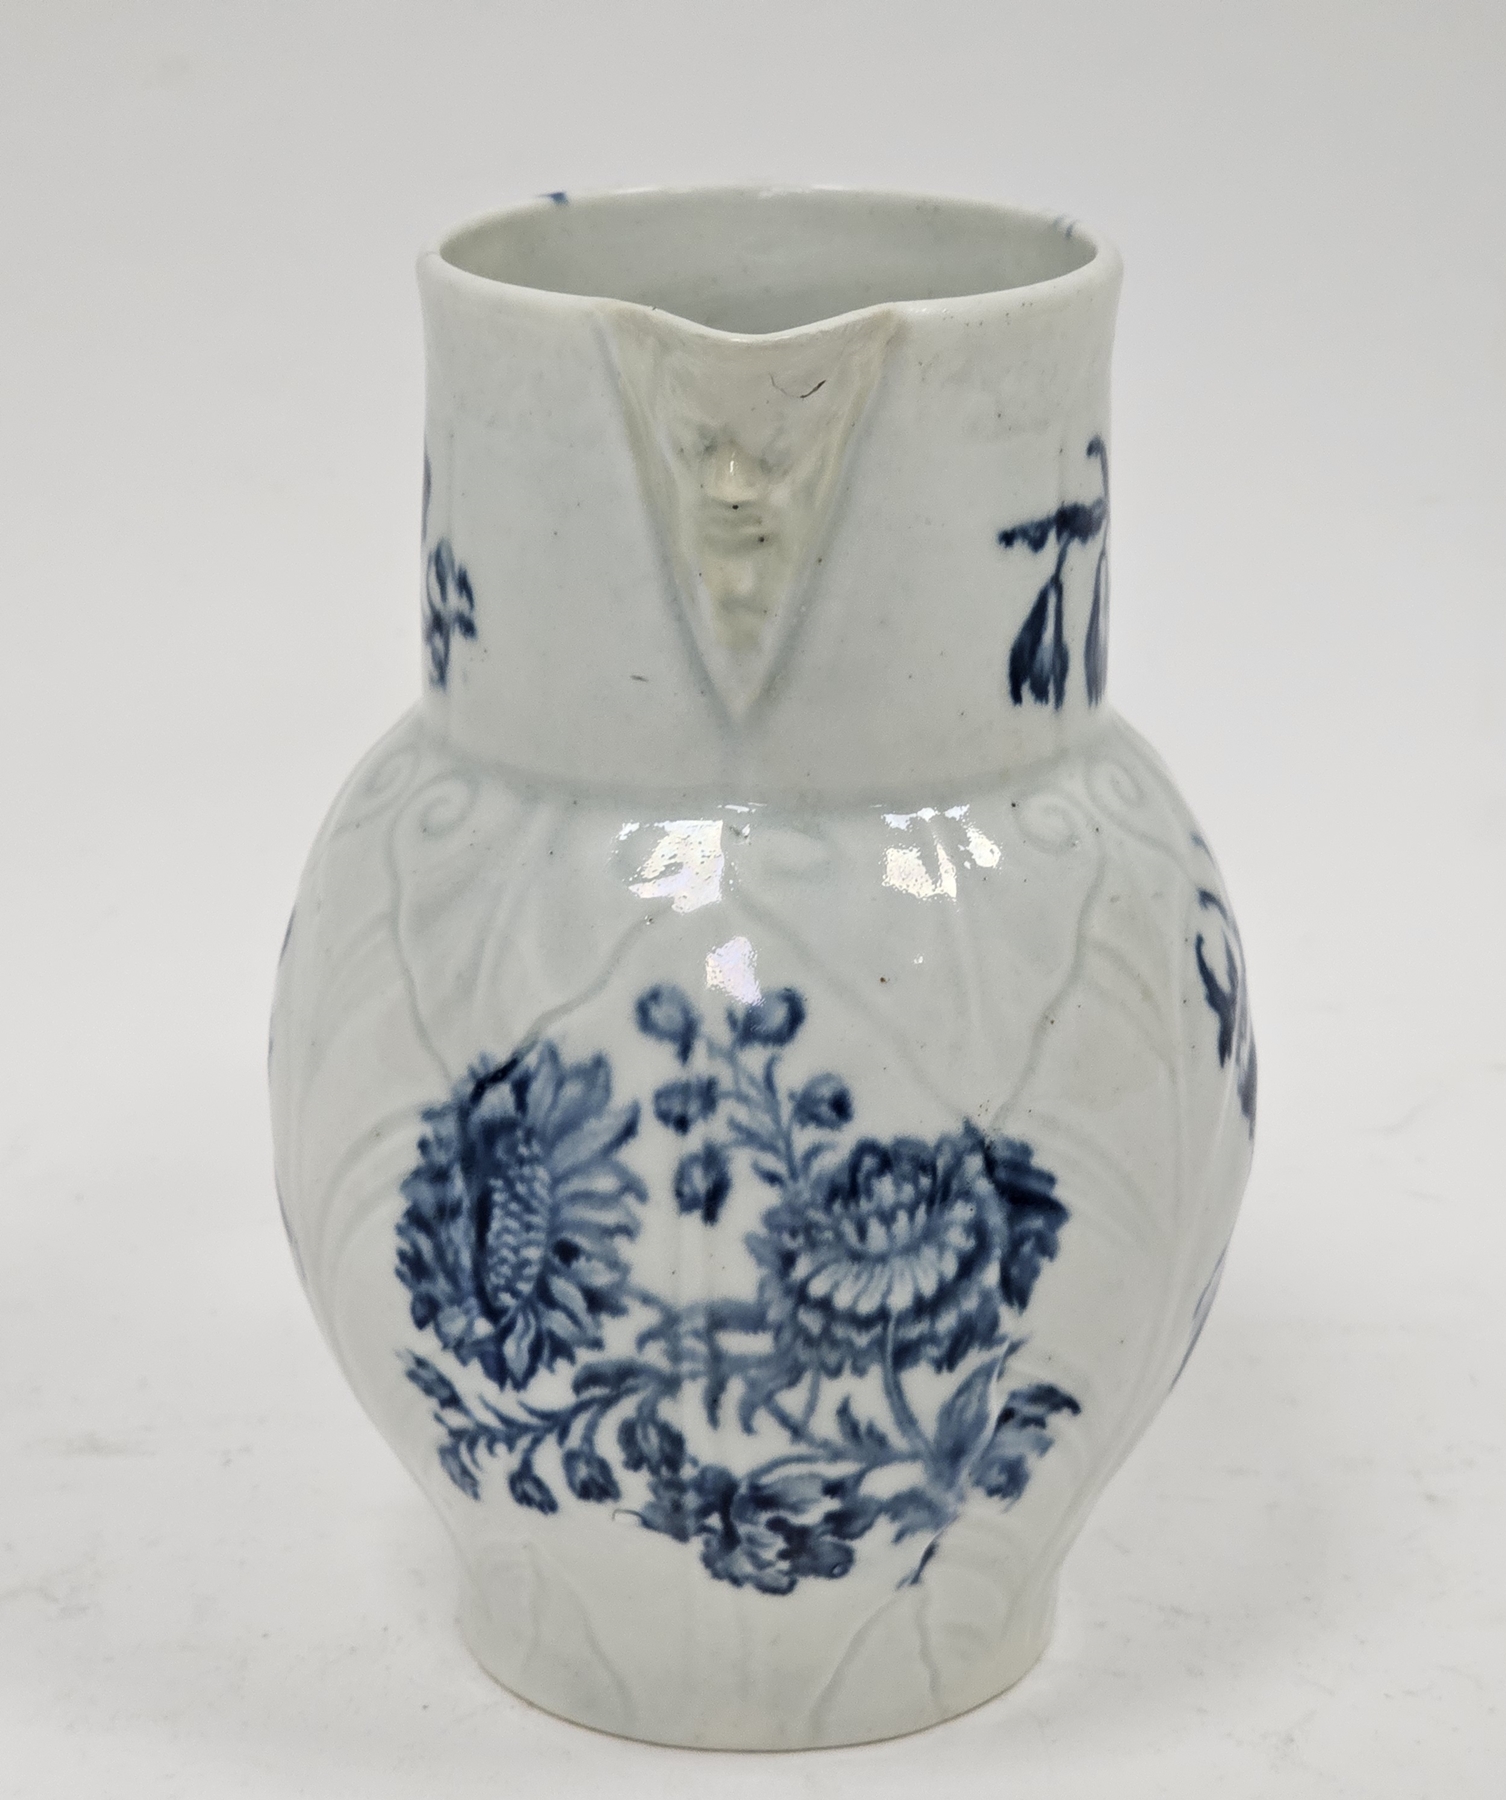 Worcester porcelain small cabbage leaf moulded mask jug, circa 1780, blue crescent mark, with mask - Image 12 of 30